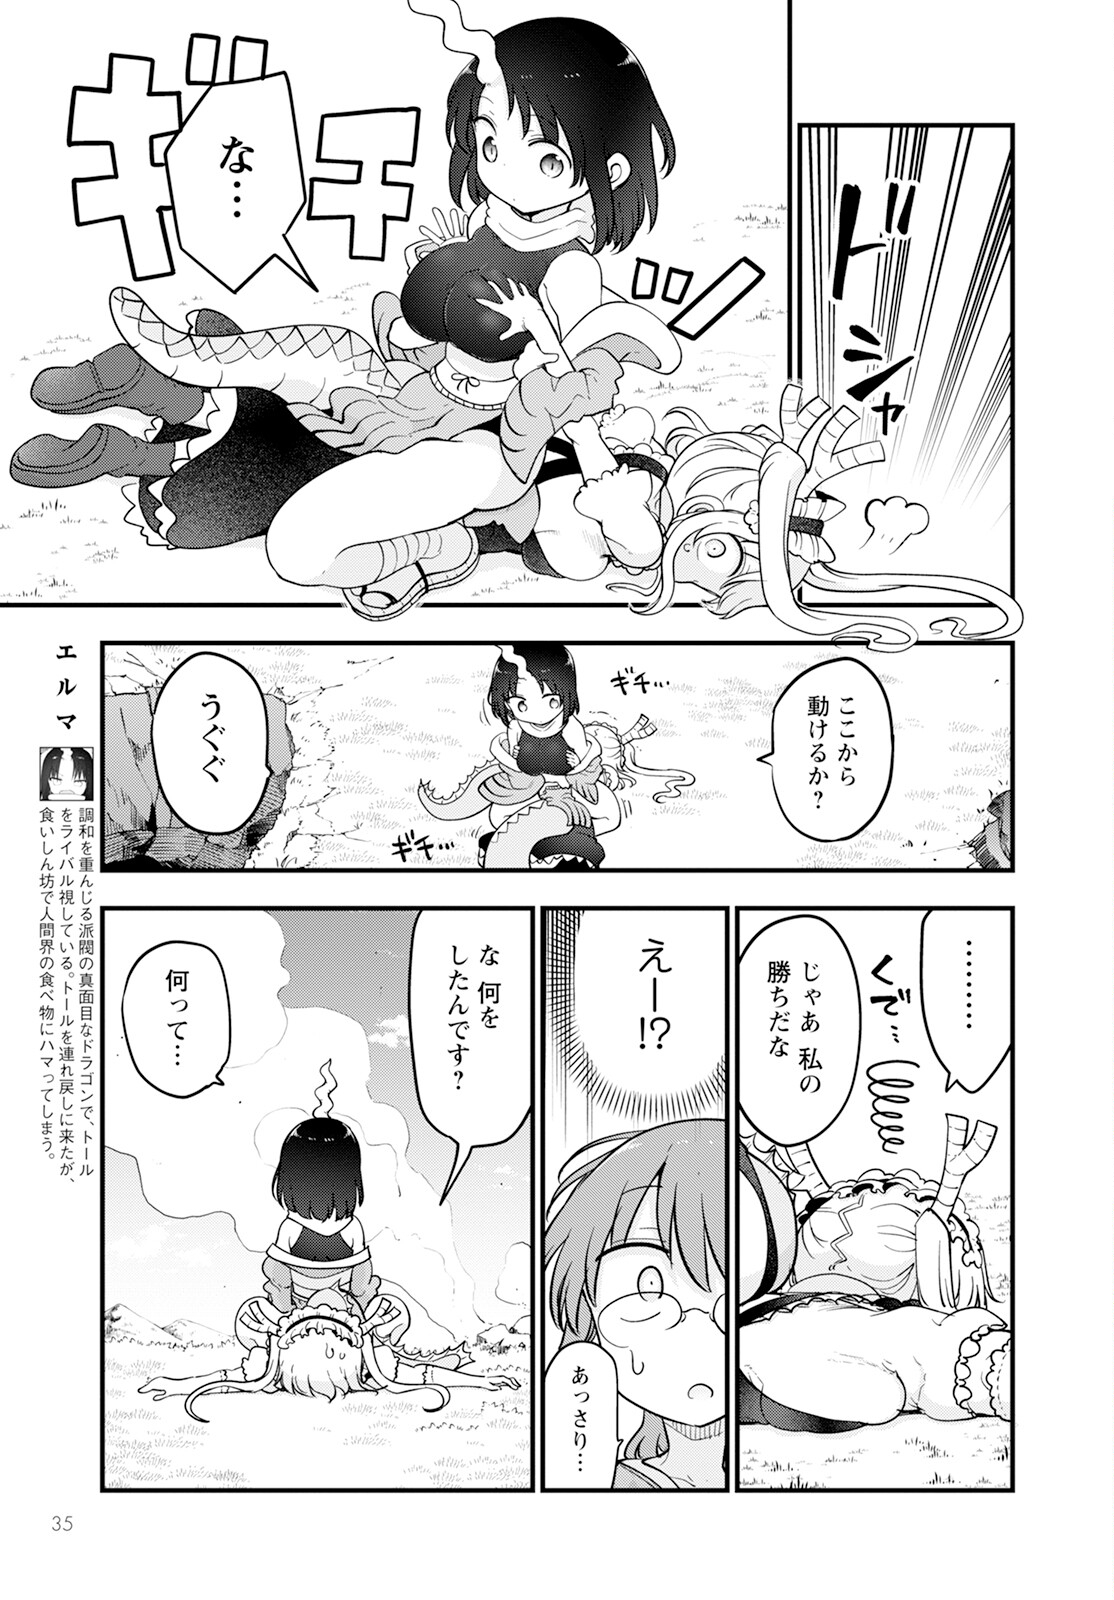 Kobayashi-san Chi no Maid Dragon - Chapter 138 - Page 3